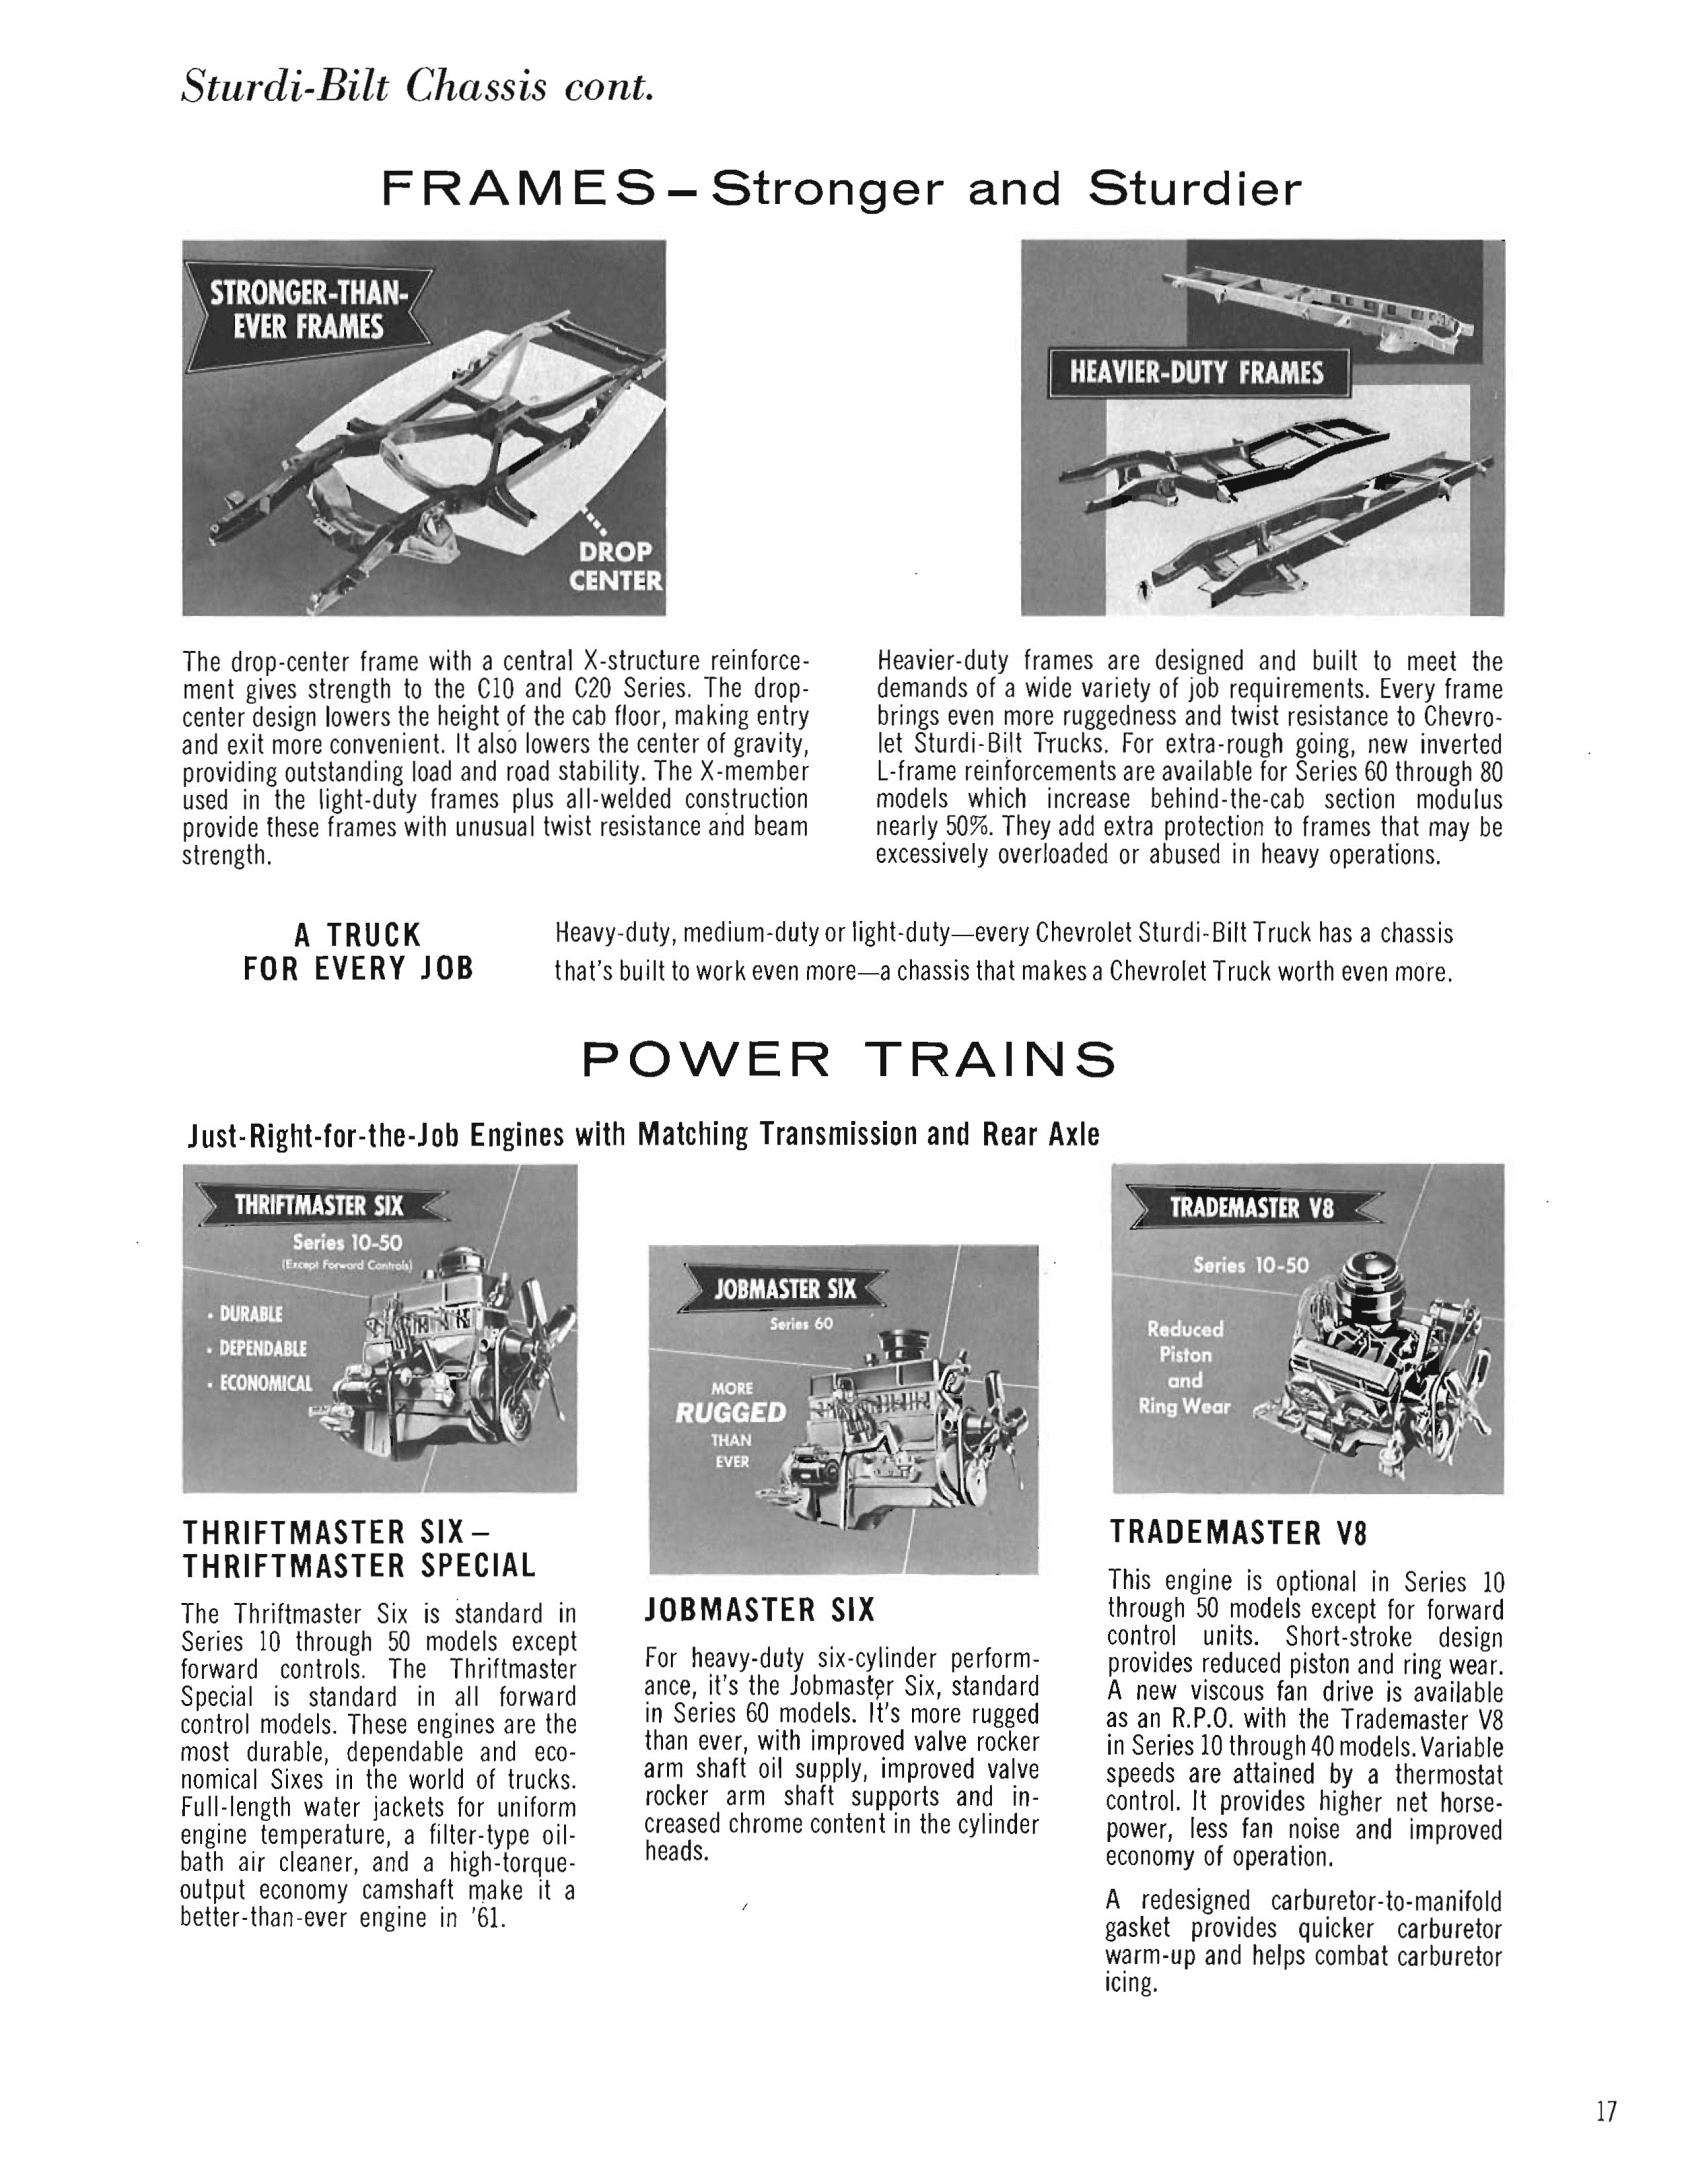 1961_Chevrolet_Trucks_Booklet-17